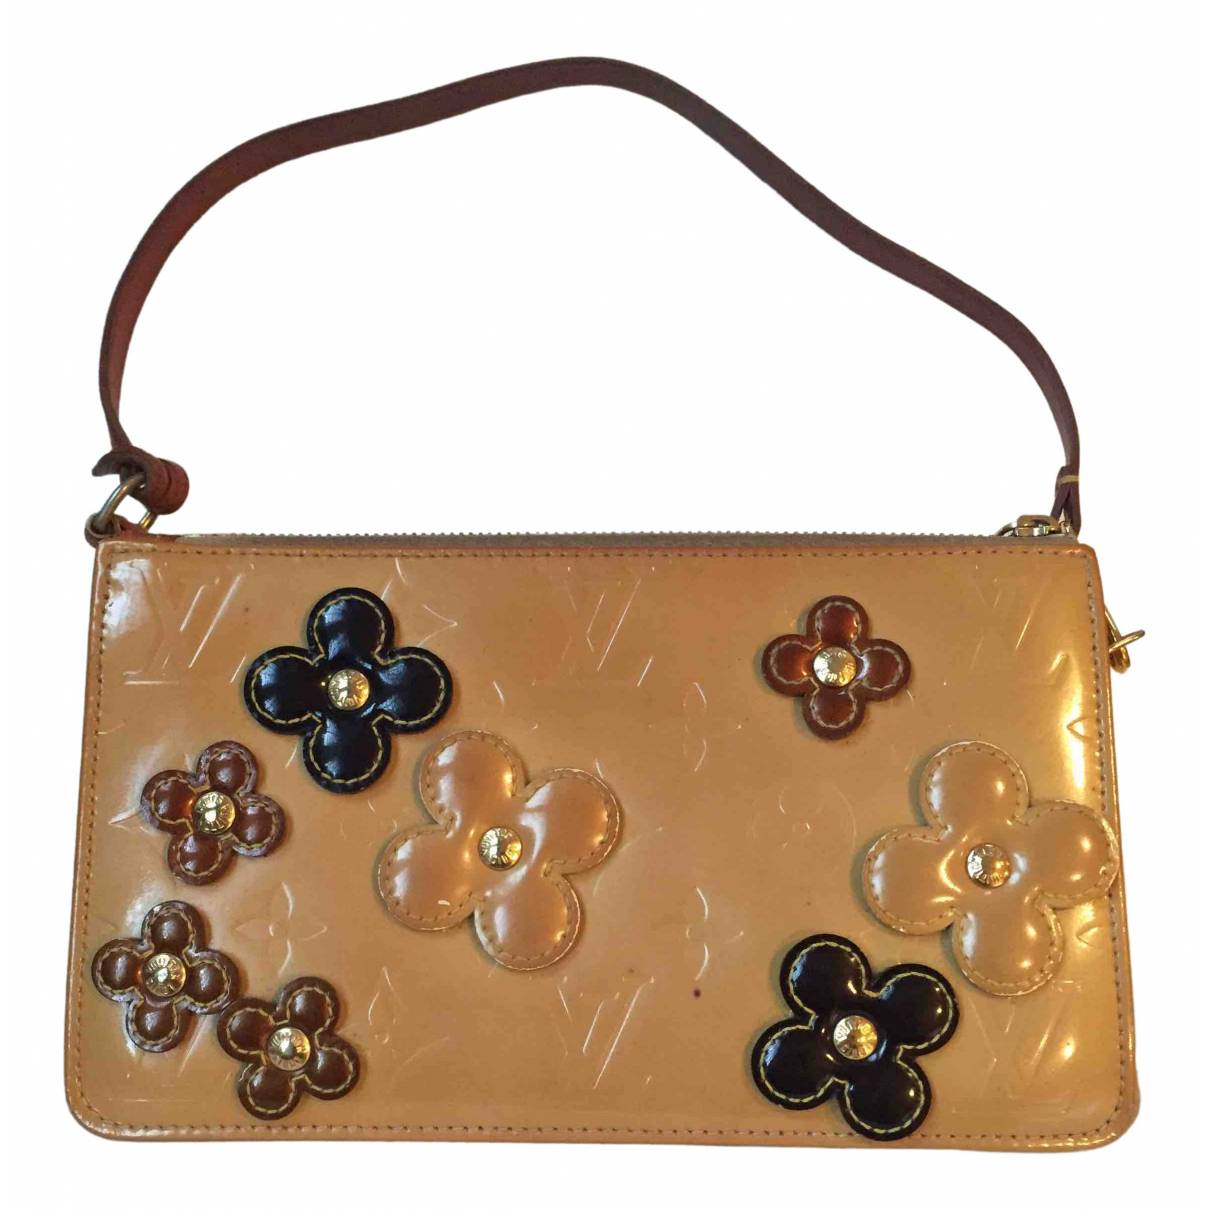 Lexington patent leather handbag Louis Vuitton Beige in Patent leather -  15617050